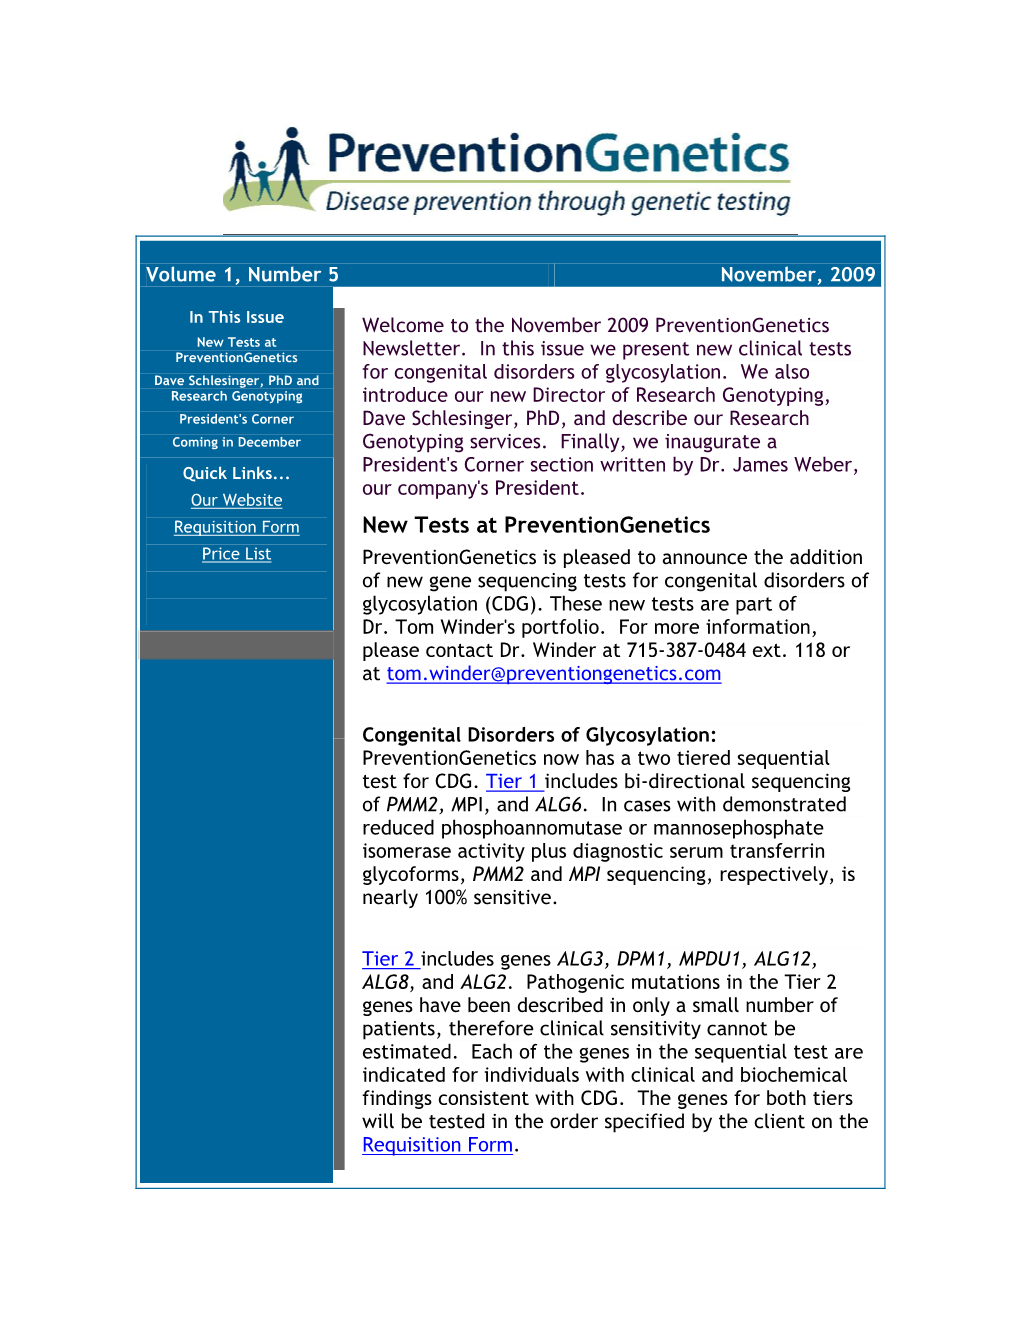 New Tests at Preventiongenetics Newsletter